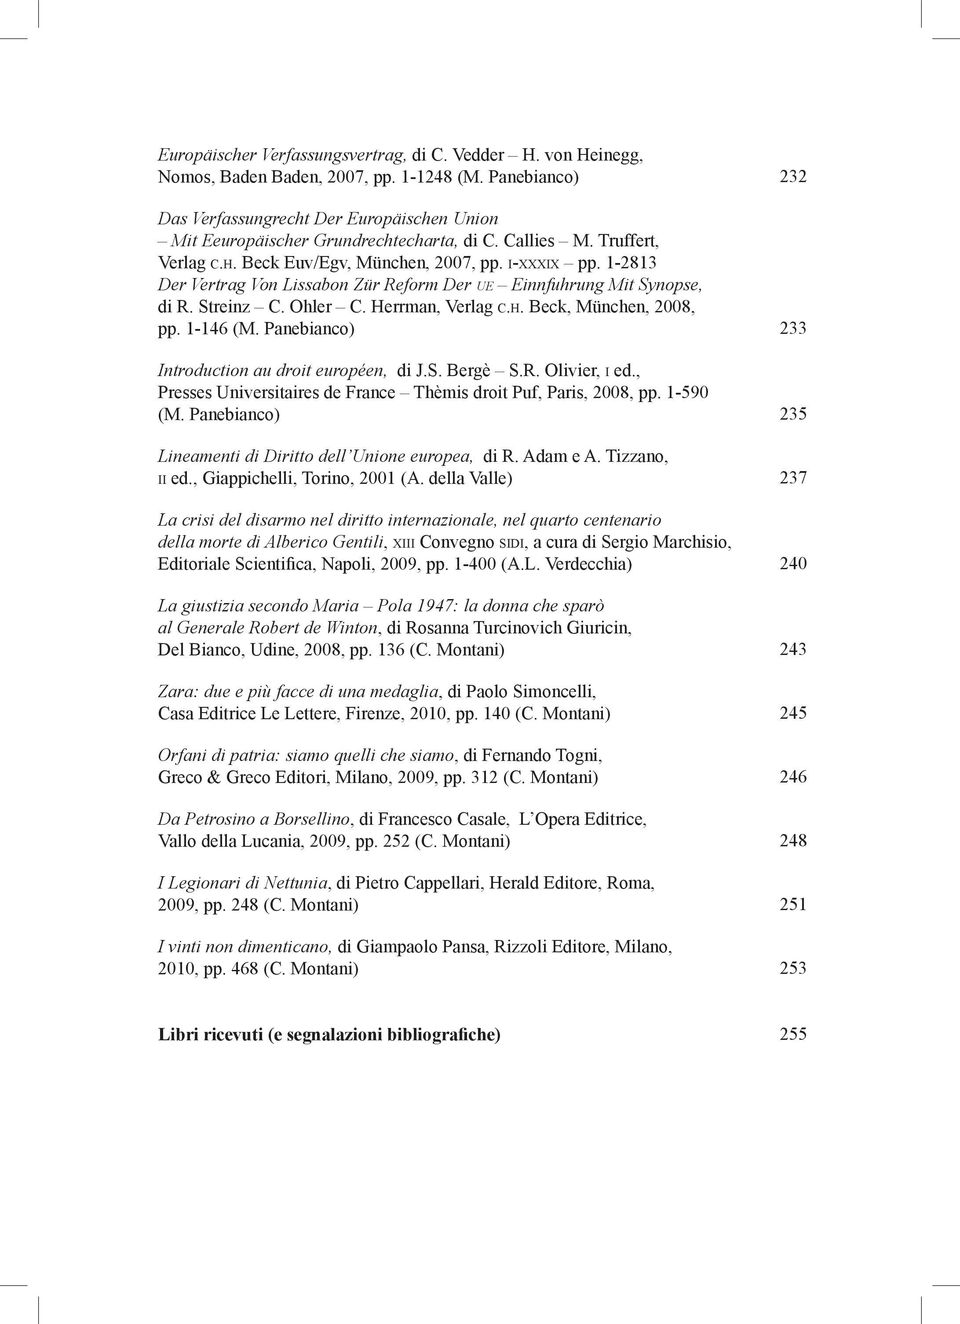 1-146 (M. Panebianco) Introduction au droit européen, di J.S. Bergè S.R. Olivier, i ed., Presses Universitaires de France Thèmis droit Puf, Paris, 2008, pp. 1-590 (M.